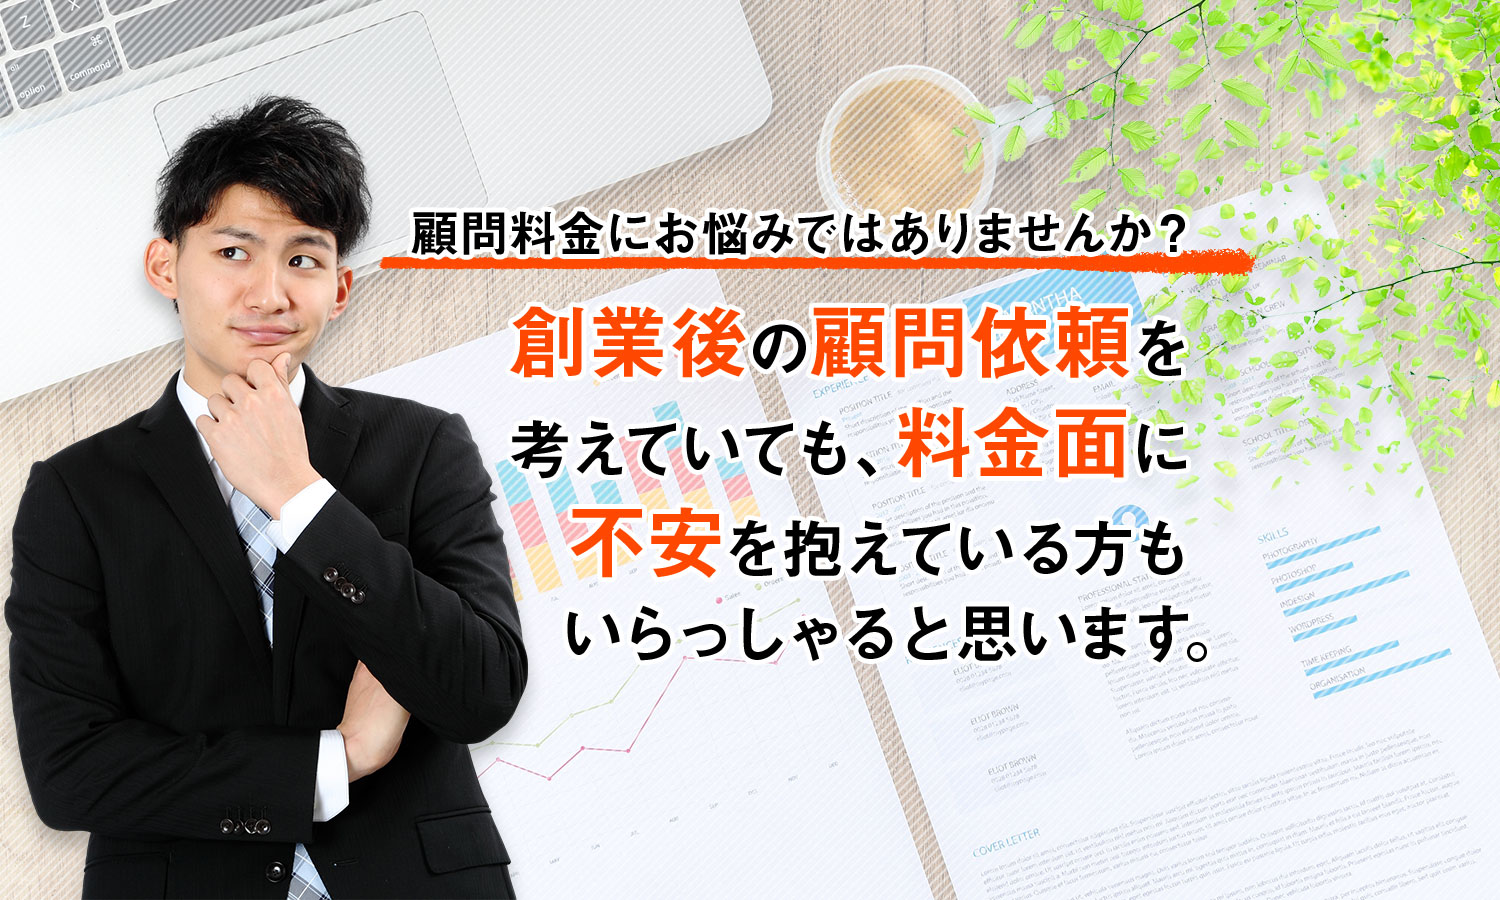 顧問料金にお悩みではありませんか？ | 栃木で創業融資のサポートなら石山明公認会計士事務所